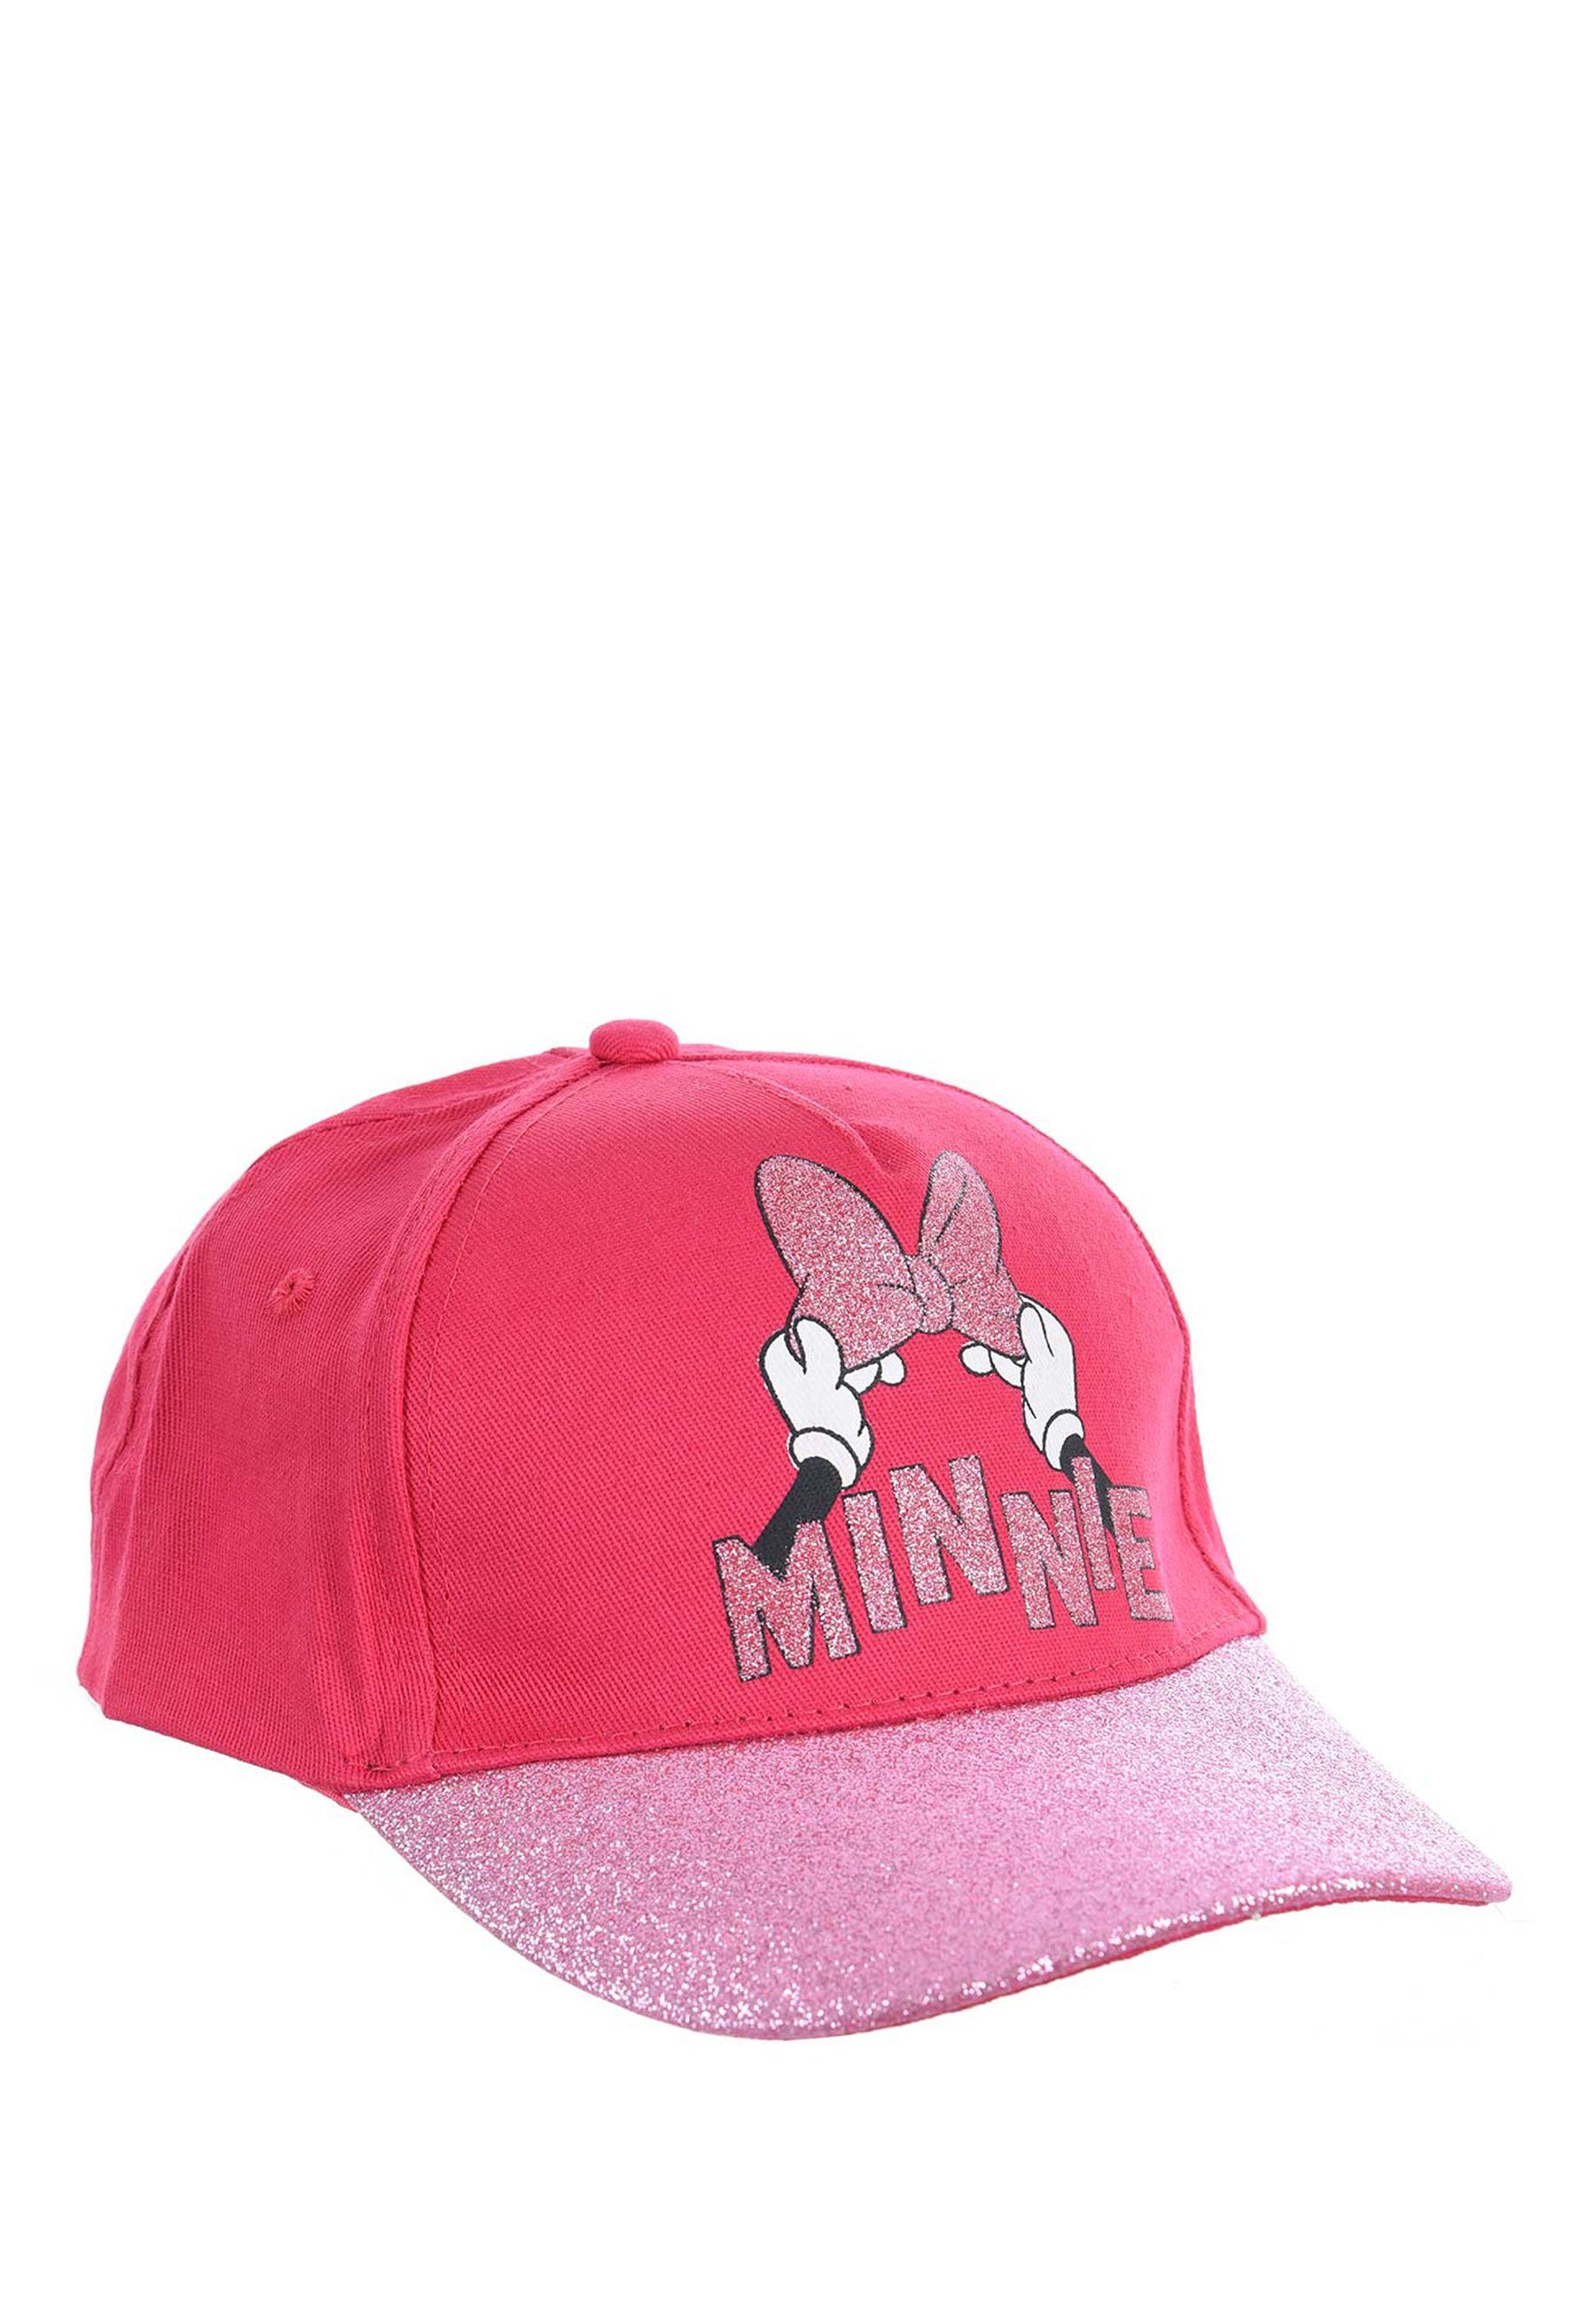 Disney Minnie Mouse Baseball Cap Kappe Mütze Pink